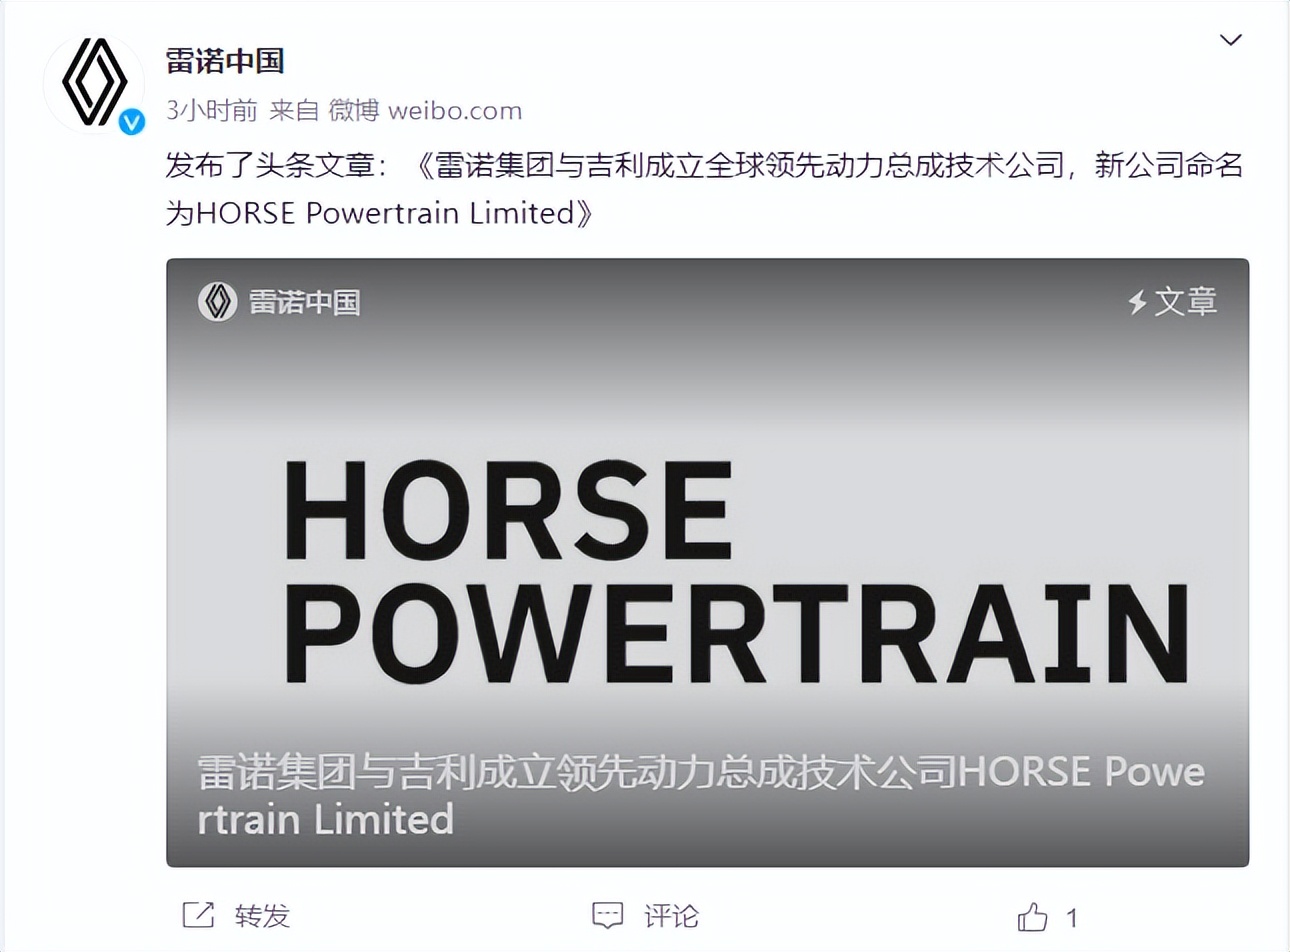 雷诺与吉利合资成立HORSE Powertrain Limited，共推汽车动力总成技术革新